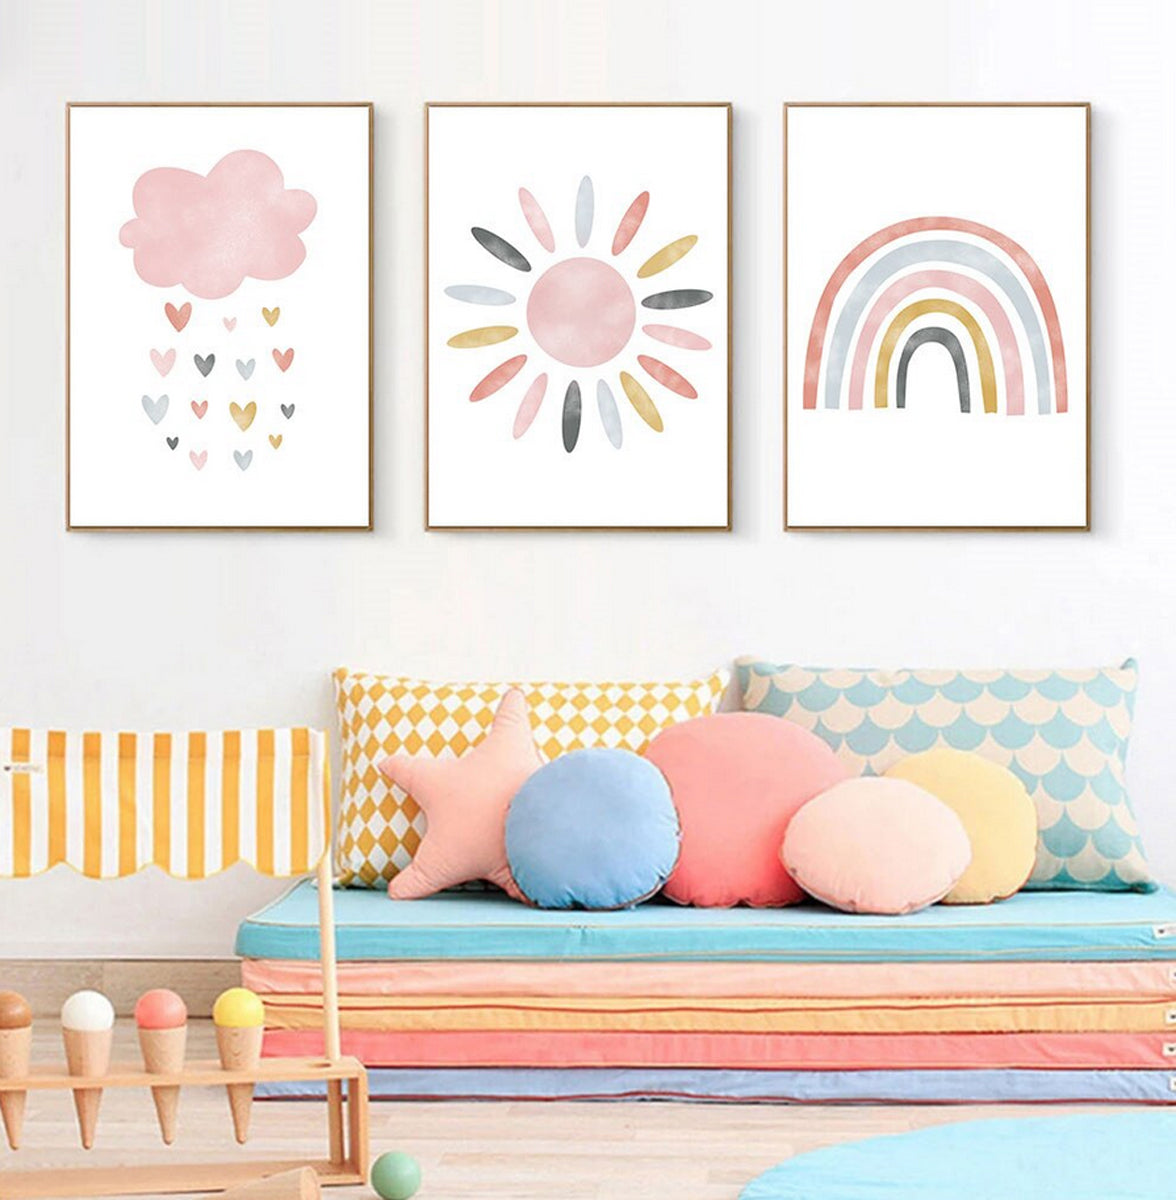 TPFLiving Poster Leinwand / Sonne, Wolken, Herzen, Regenbogen für Kinderzimmer - Auch im 3er Set / Verschiedene Größen - OHNE Rahmen - Modell h258